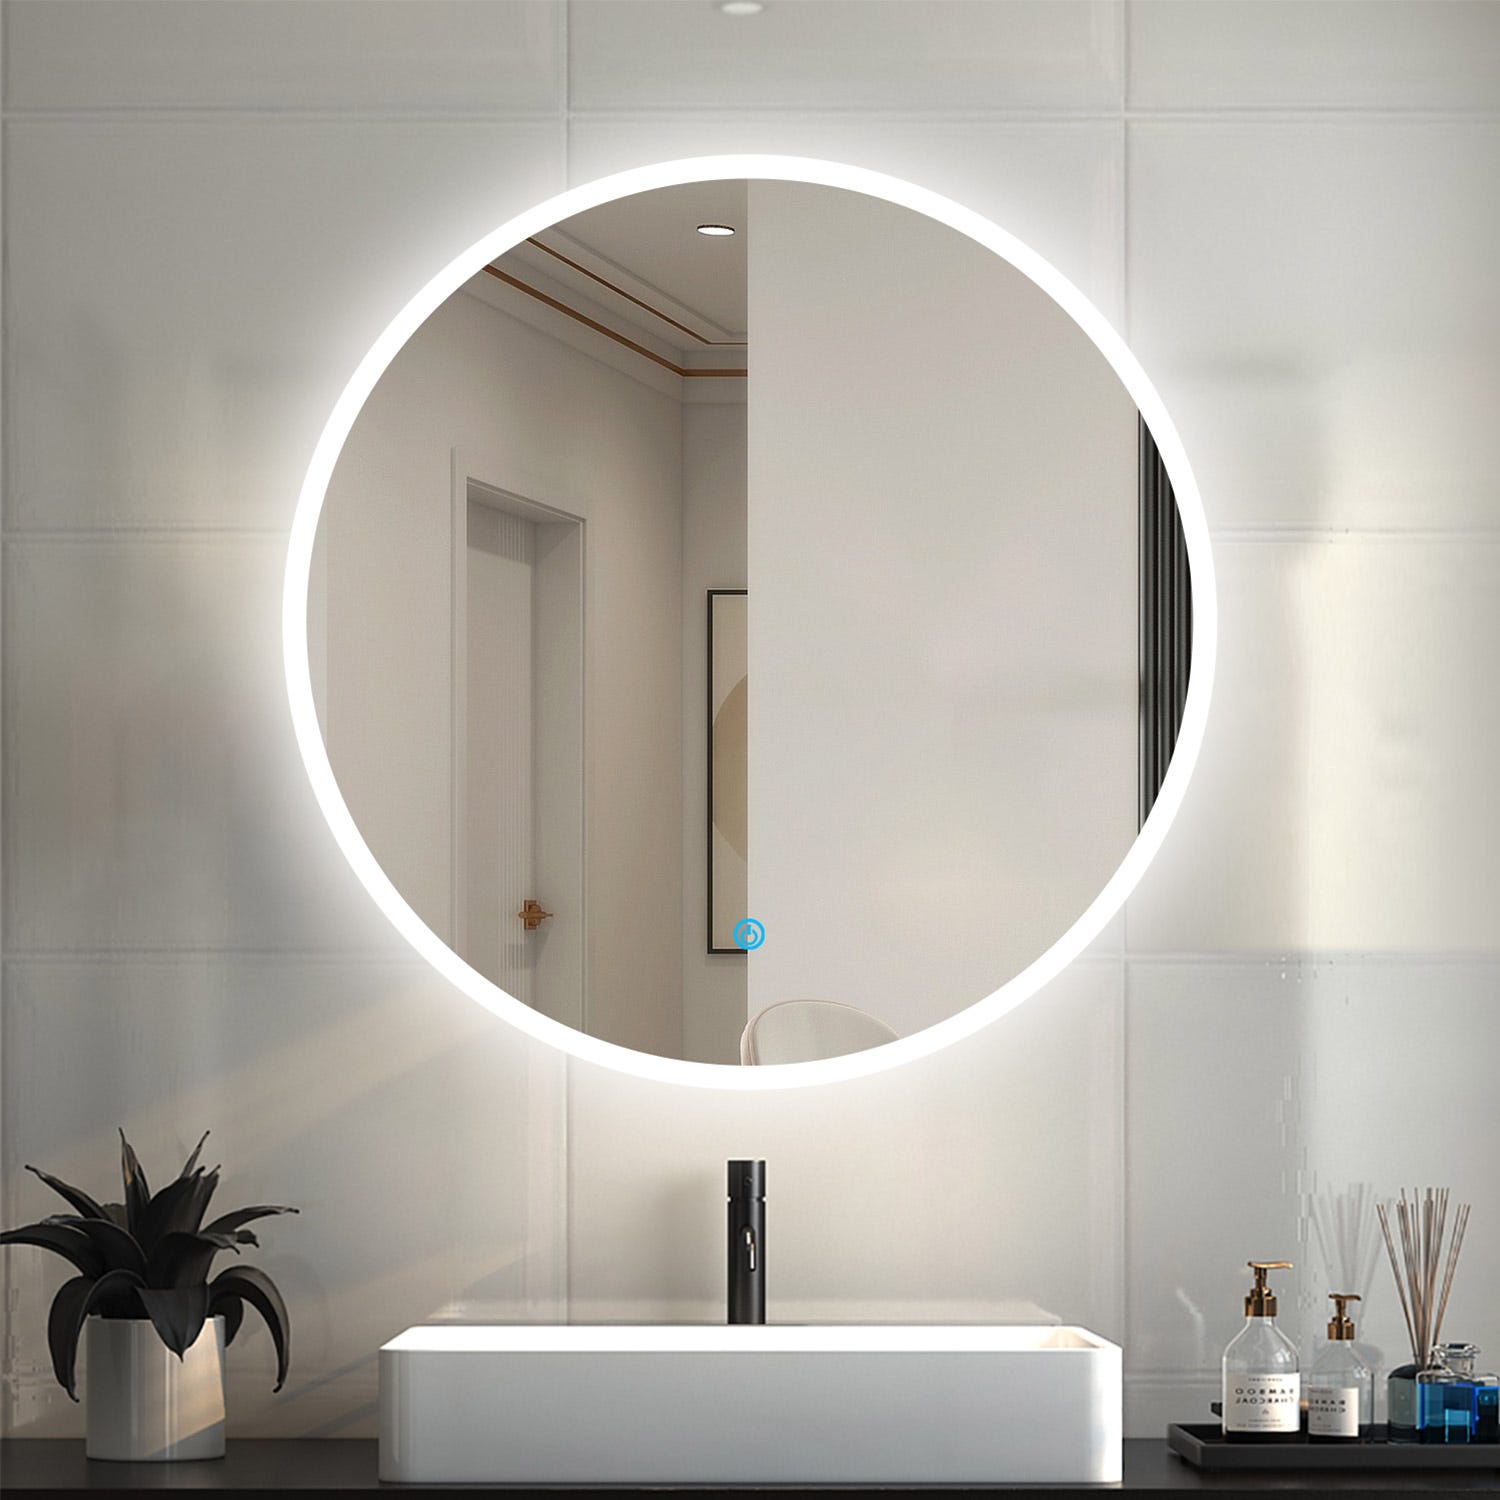 120 x 70 cm Espejo de baño led con iluminación, botón táctil,antivaho